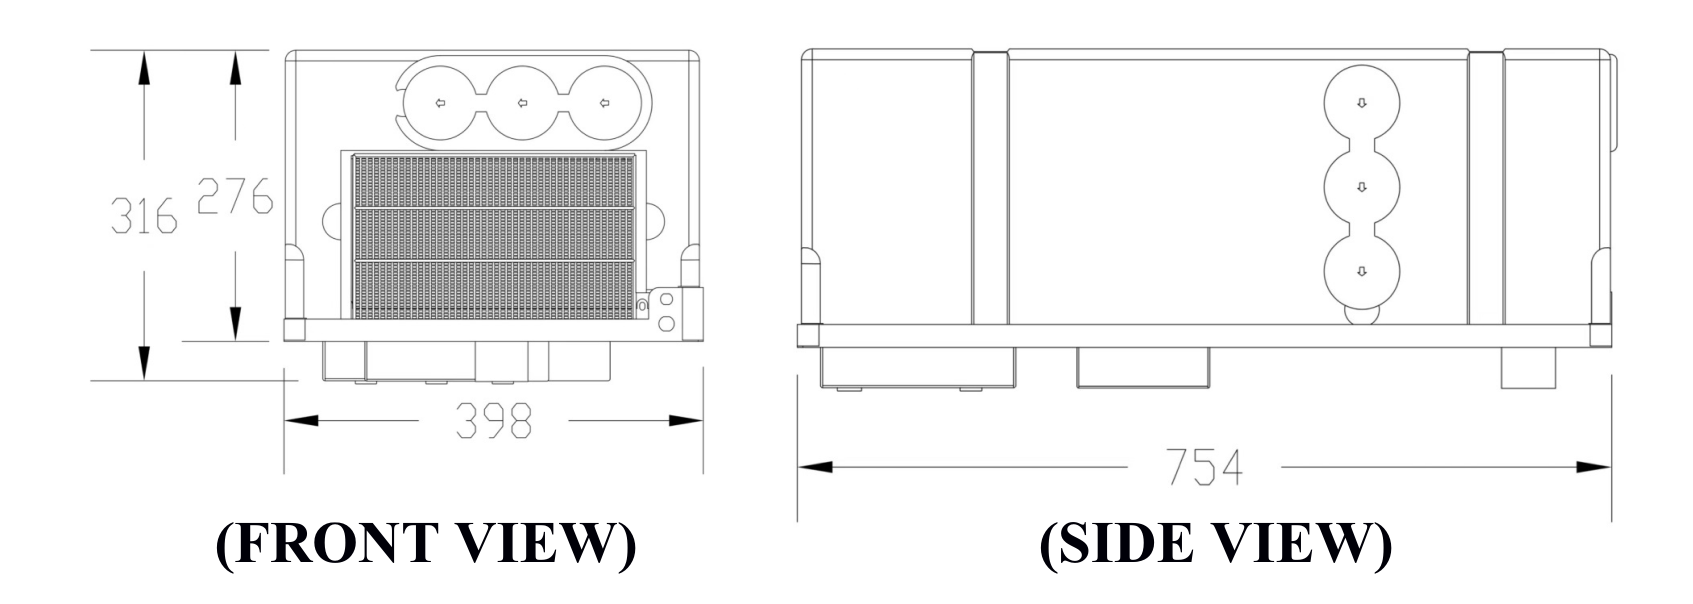 Under-bunk Air Conditioner (1)